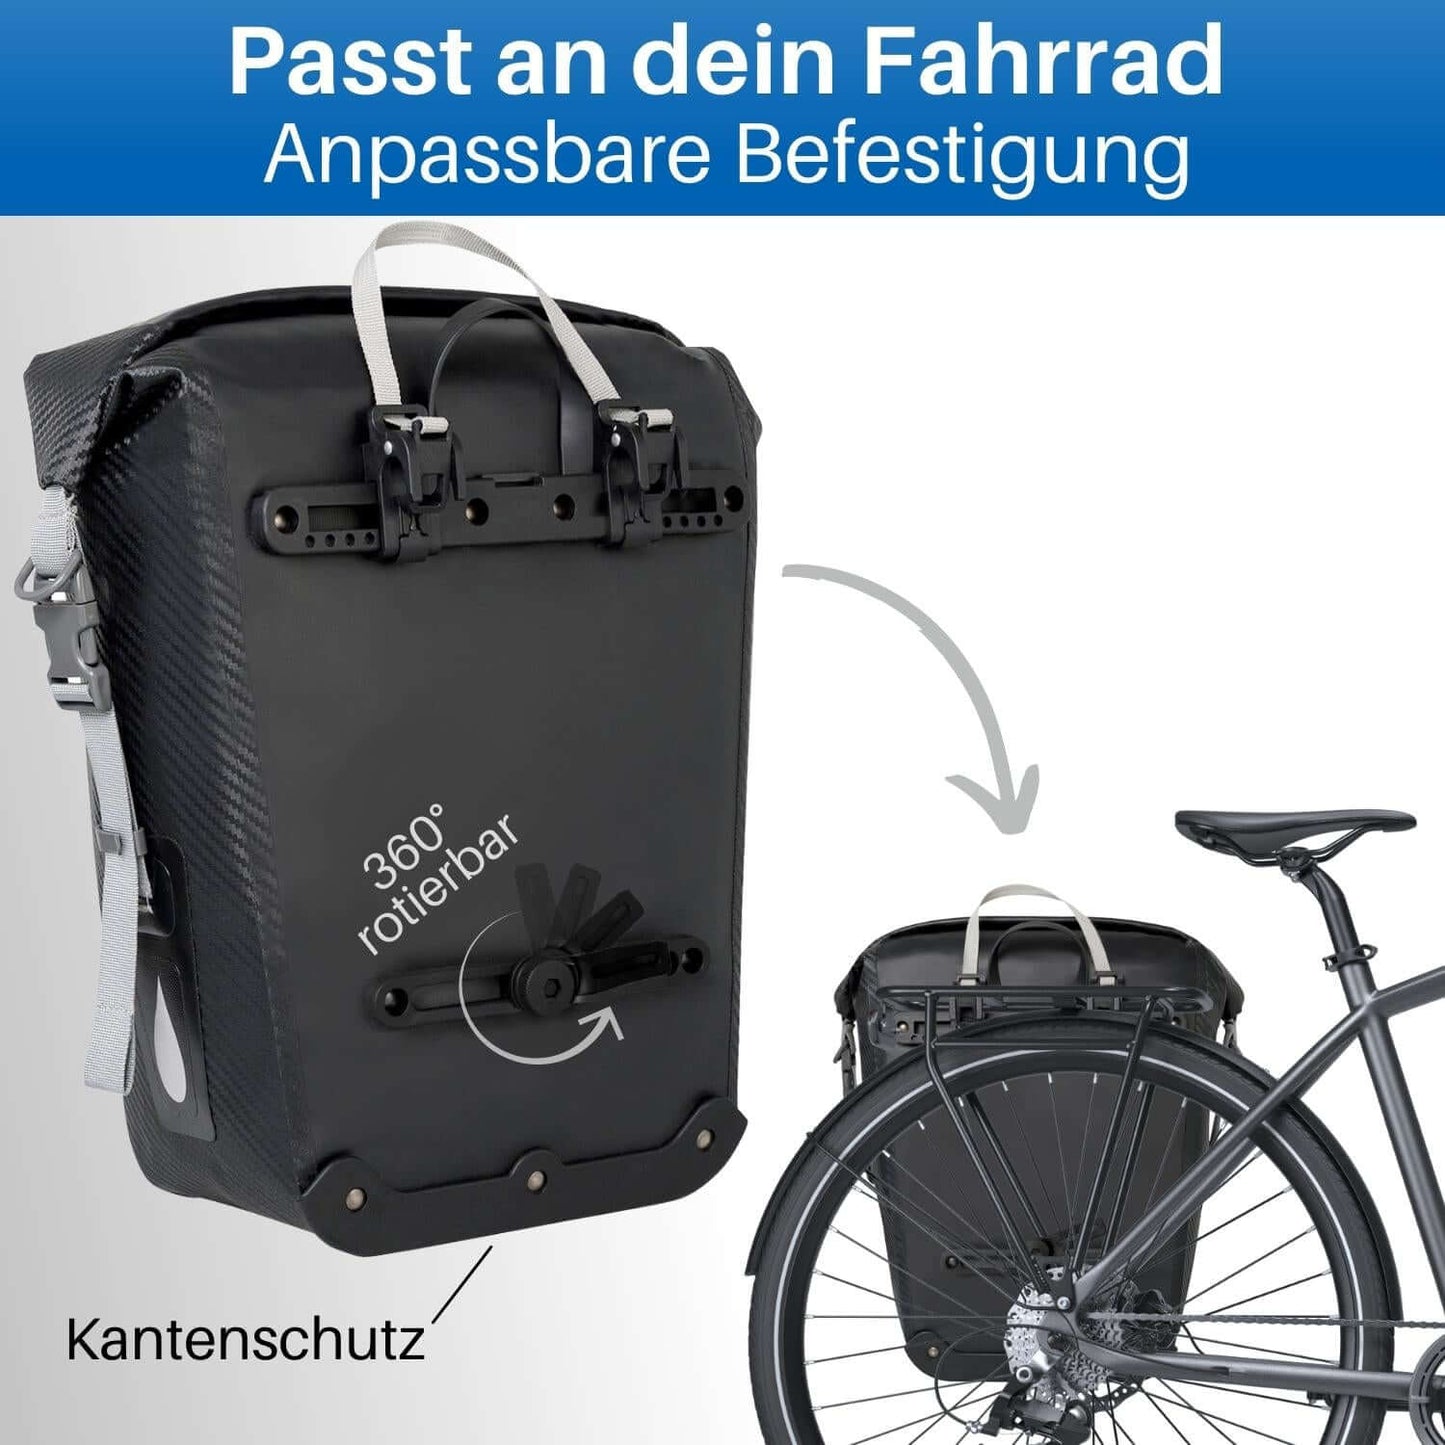 Die Fahrrad Packtasche passt an jeden Gepäckträger.